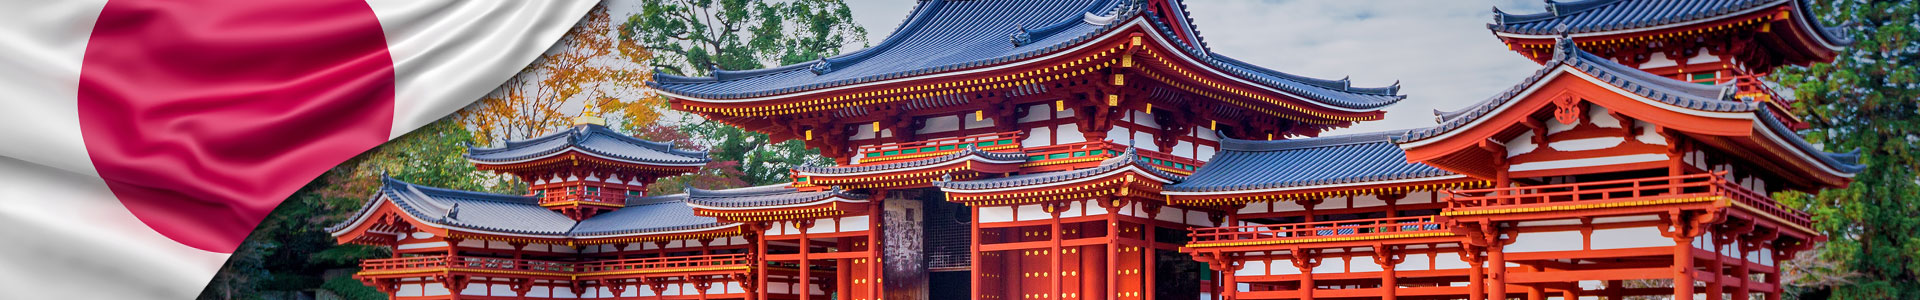 Bandera de Japón, con foto de Uji, Kioto, Japón - famoso templo budista Byodo-in, declarado Patrimonio de la Humanidad